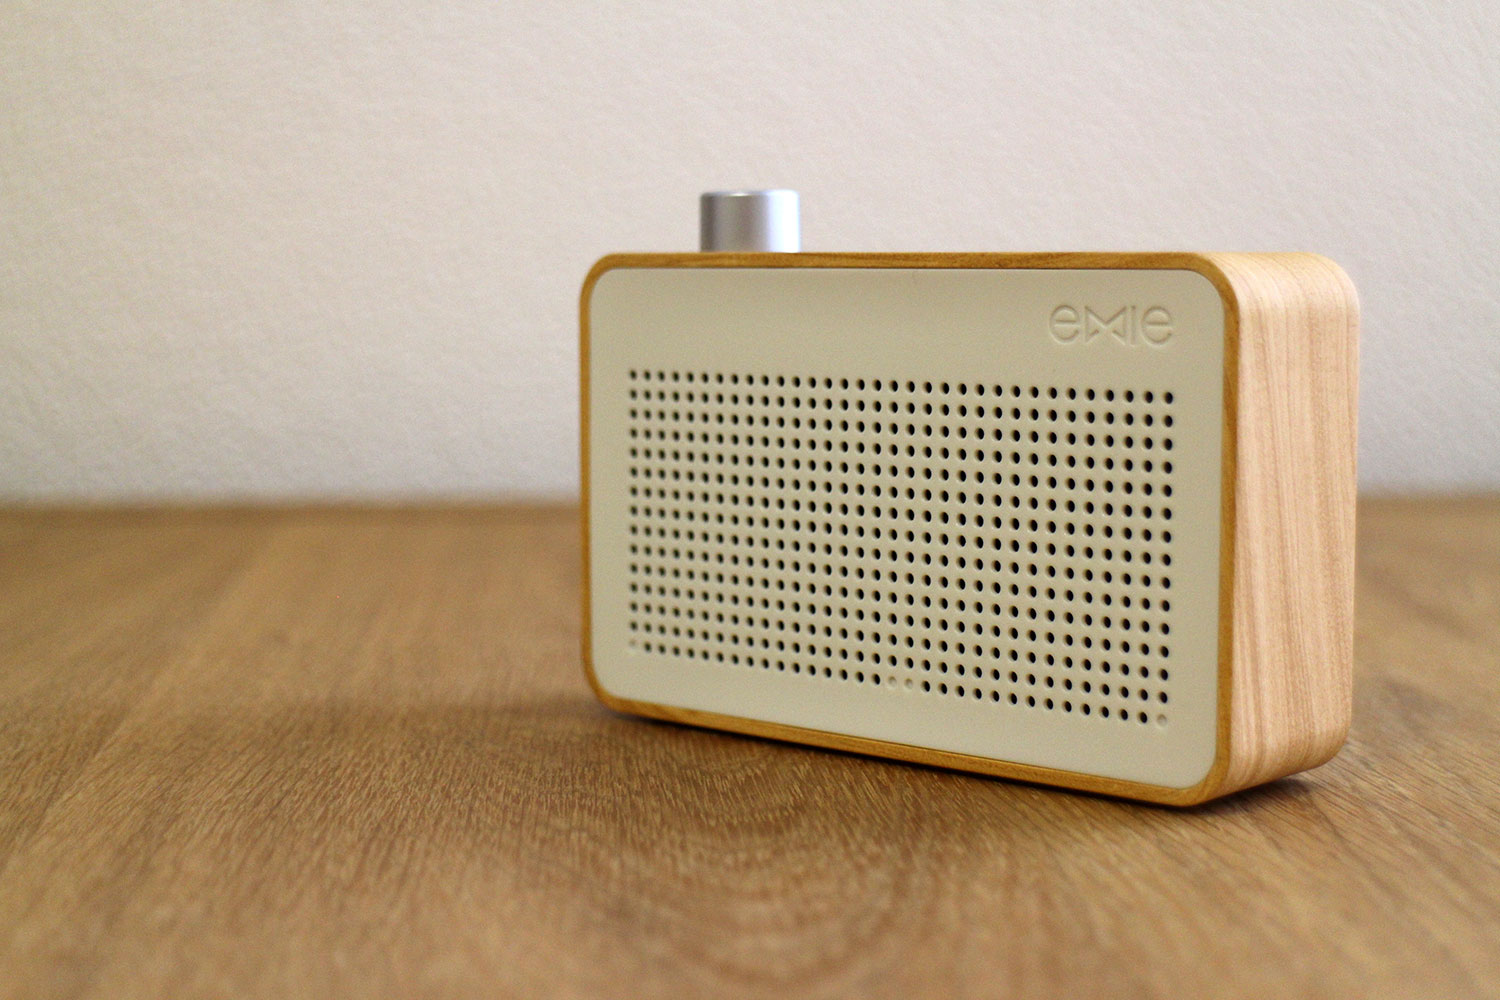 Emie Radio Bluetooth Speaker